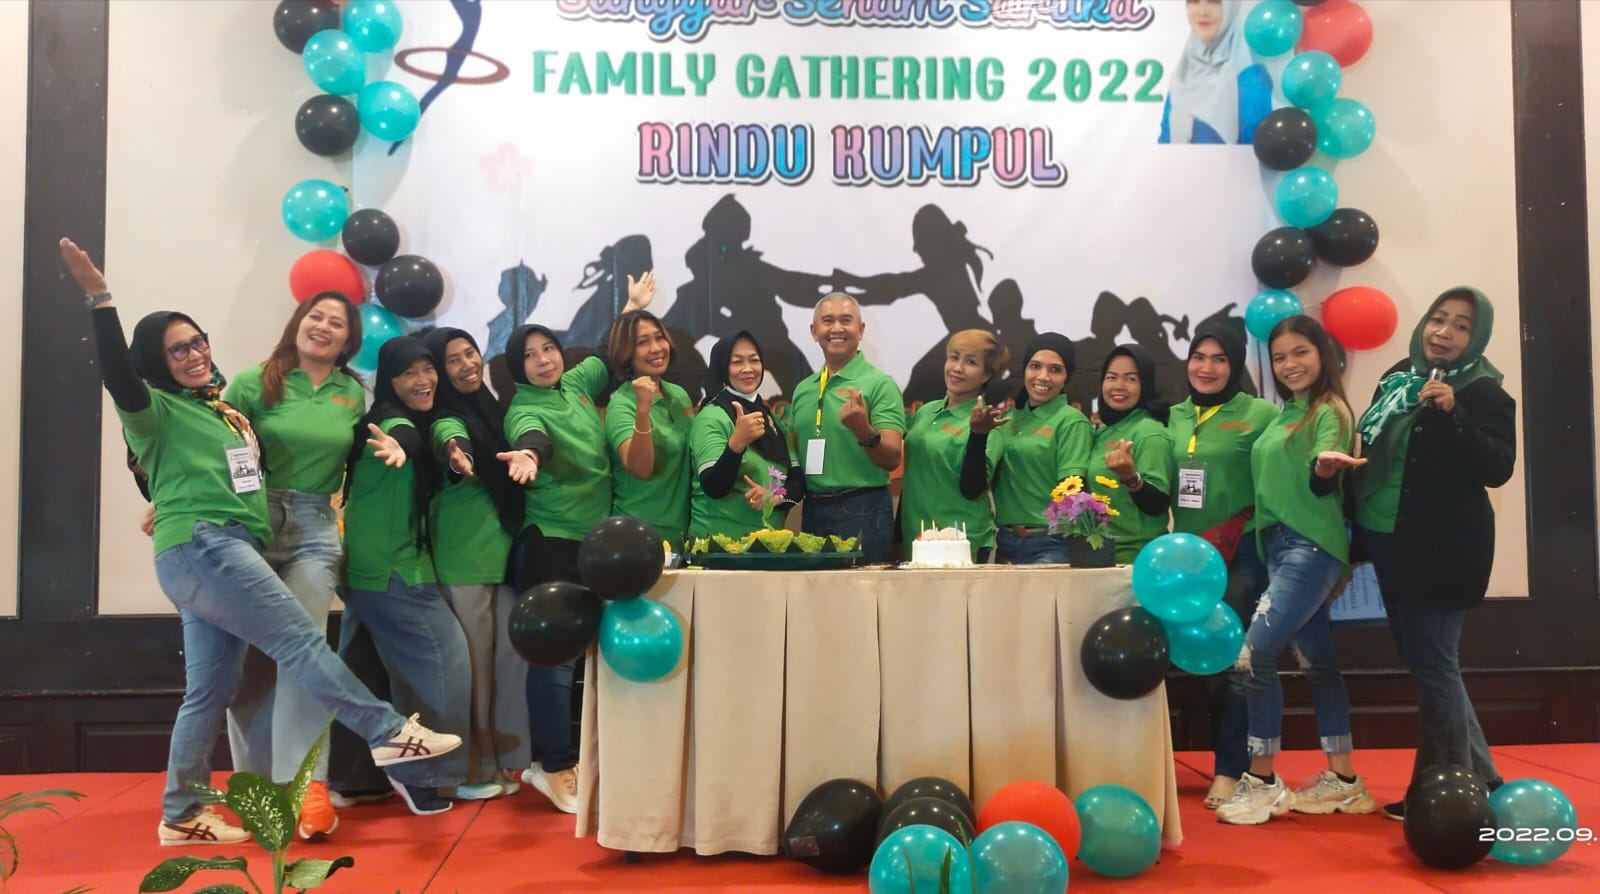 Ketua IKP Riau Sangar Senam Sartika Mengadakan Silaturahmi Bersama Fmily Gathering Rindu Kumpul 2022